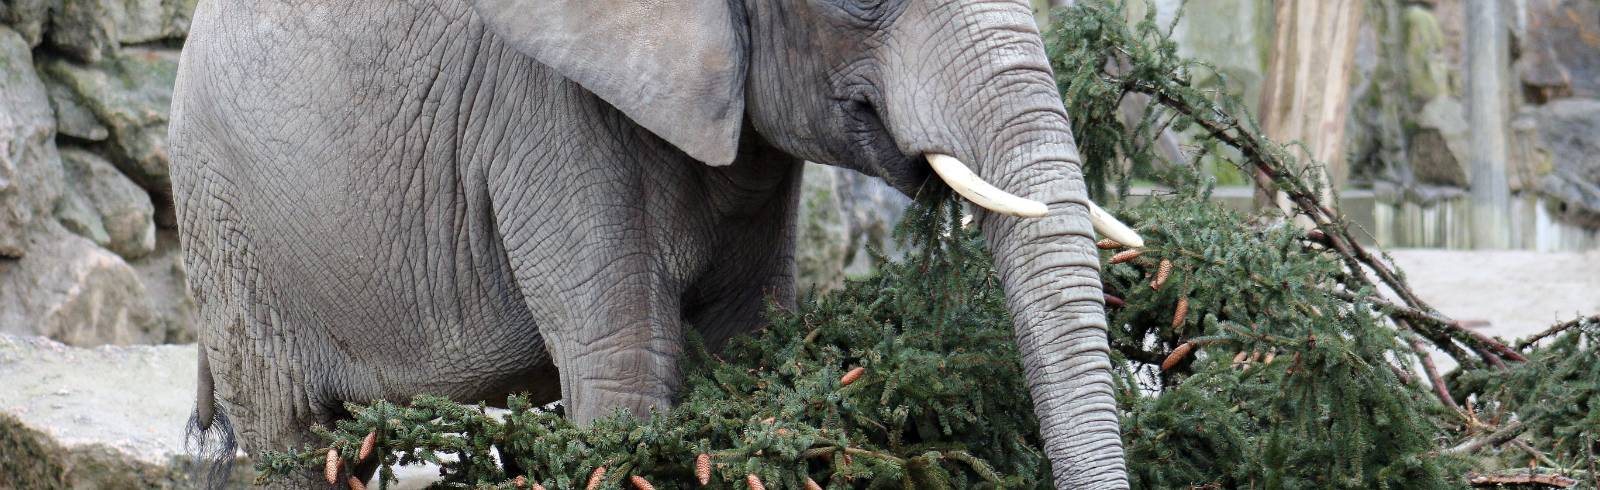 Tiergarten: Abwechslung für Elefanten